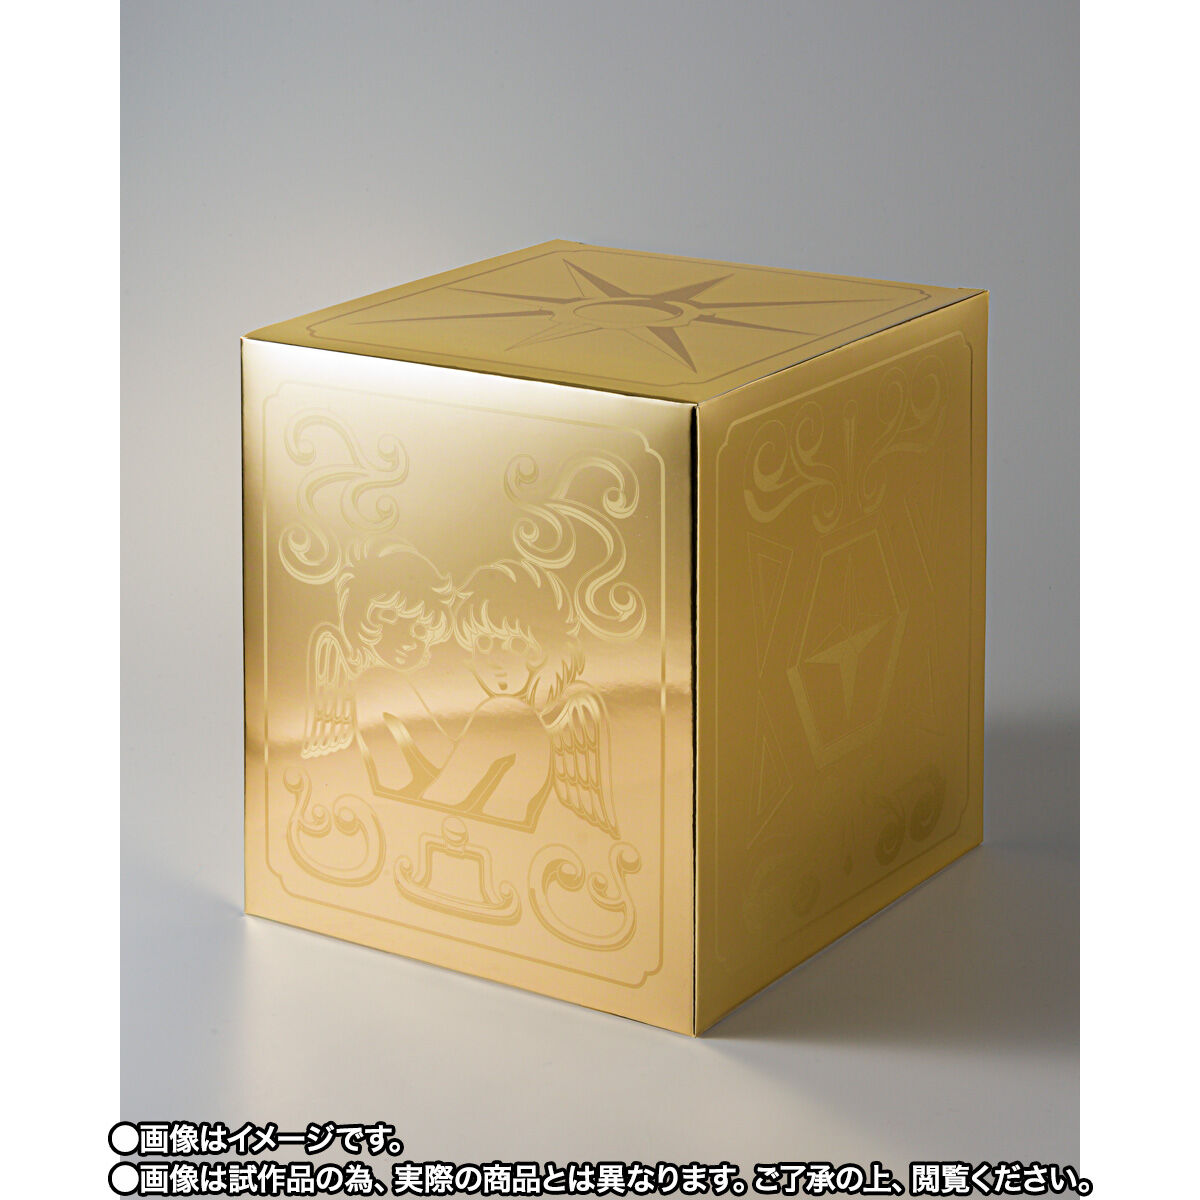 聖闘士聖衣神話EX ジェミニサガ GOLD24 魂ネイション2021約180mm対象年齢15歳